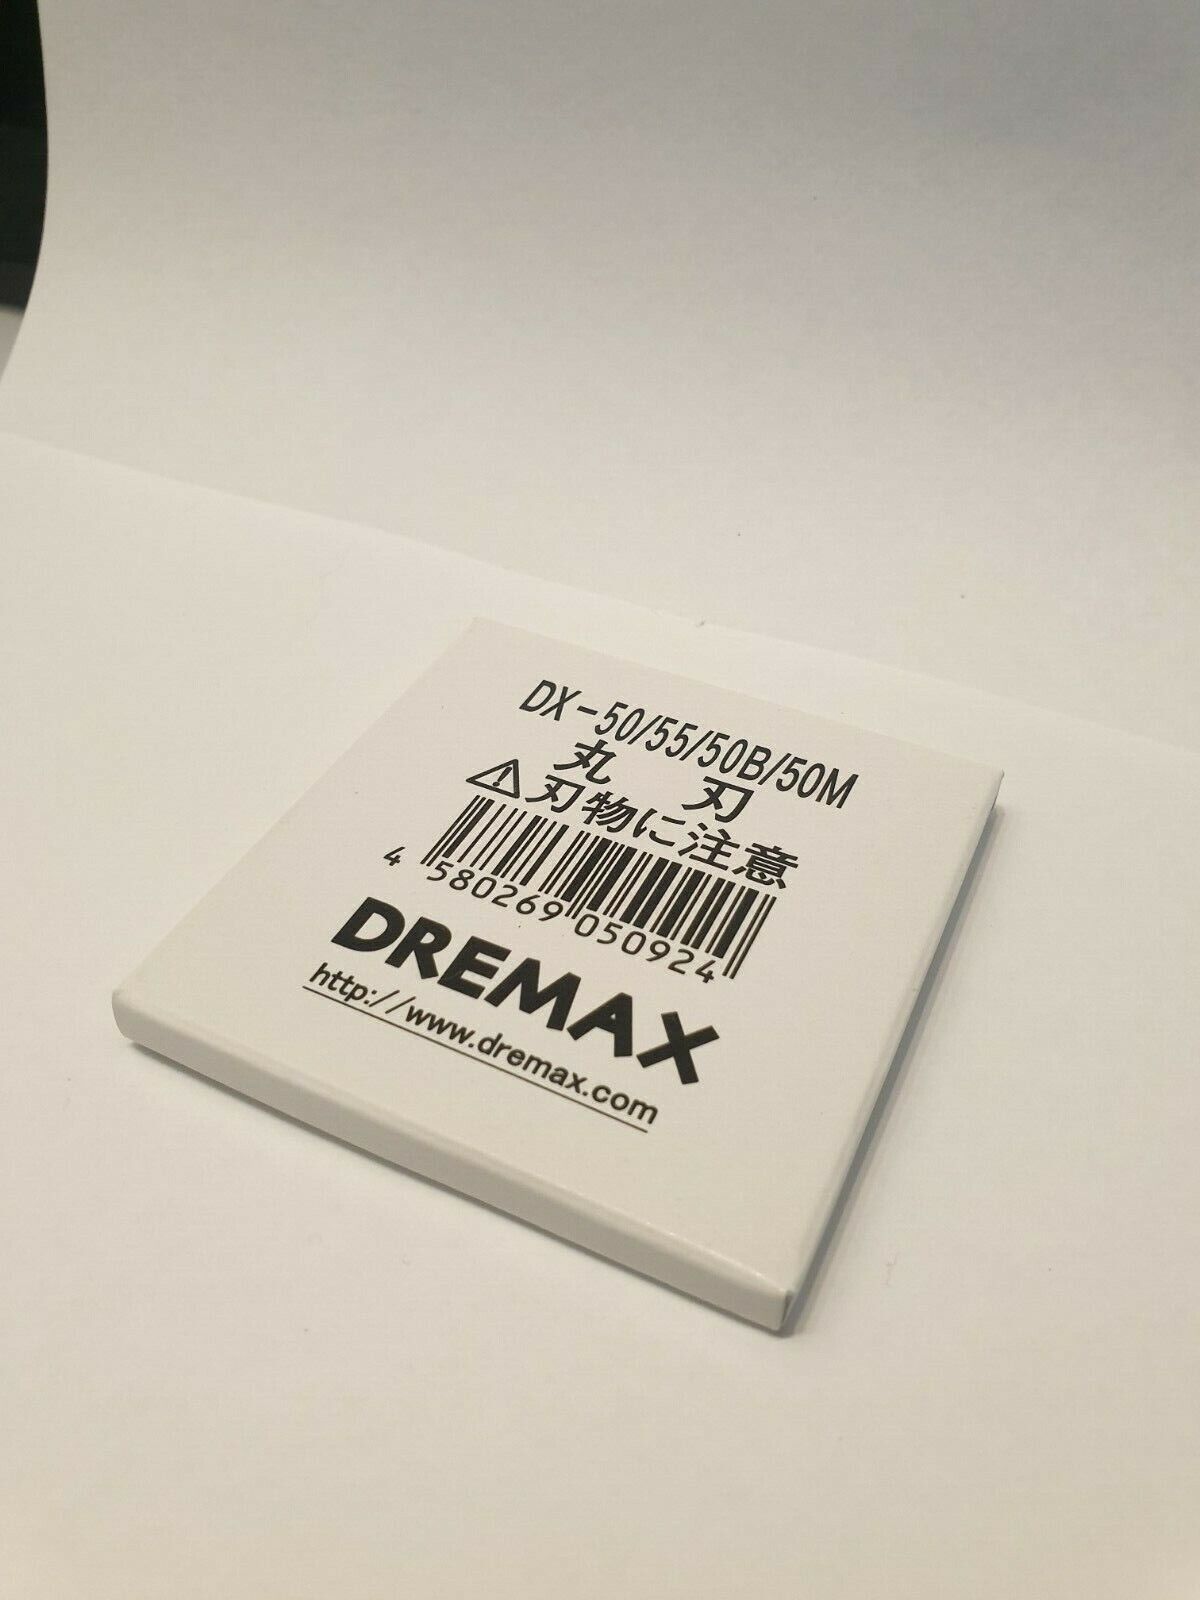 Dremax DX50 Series Replacement round blade[DX50B, DX50T, DX50M, DX50]